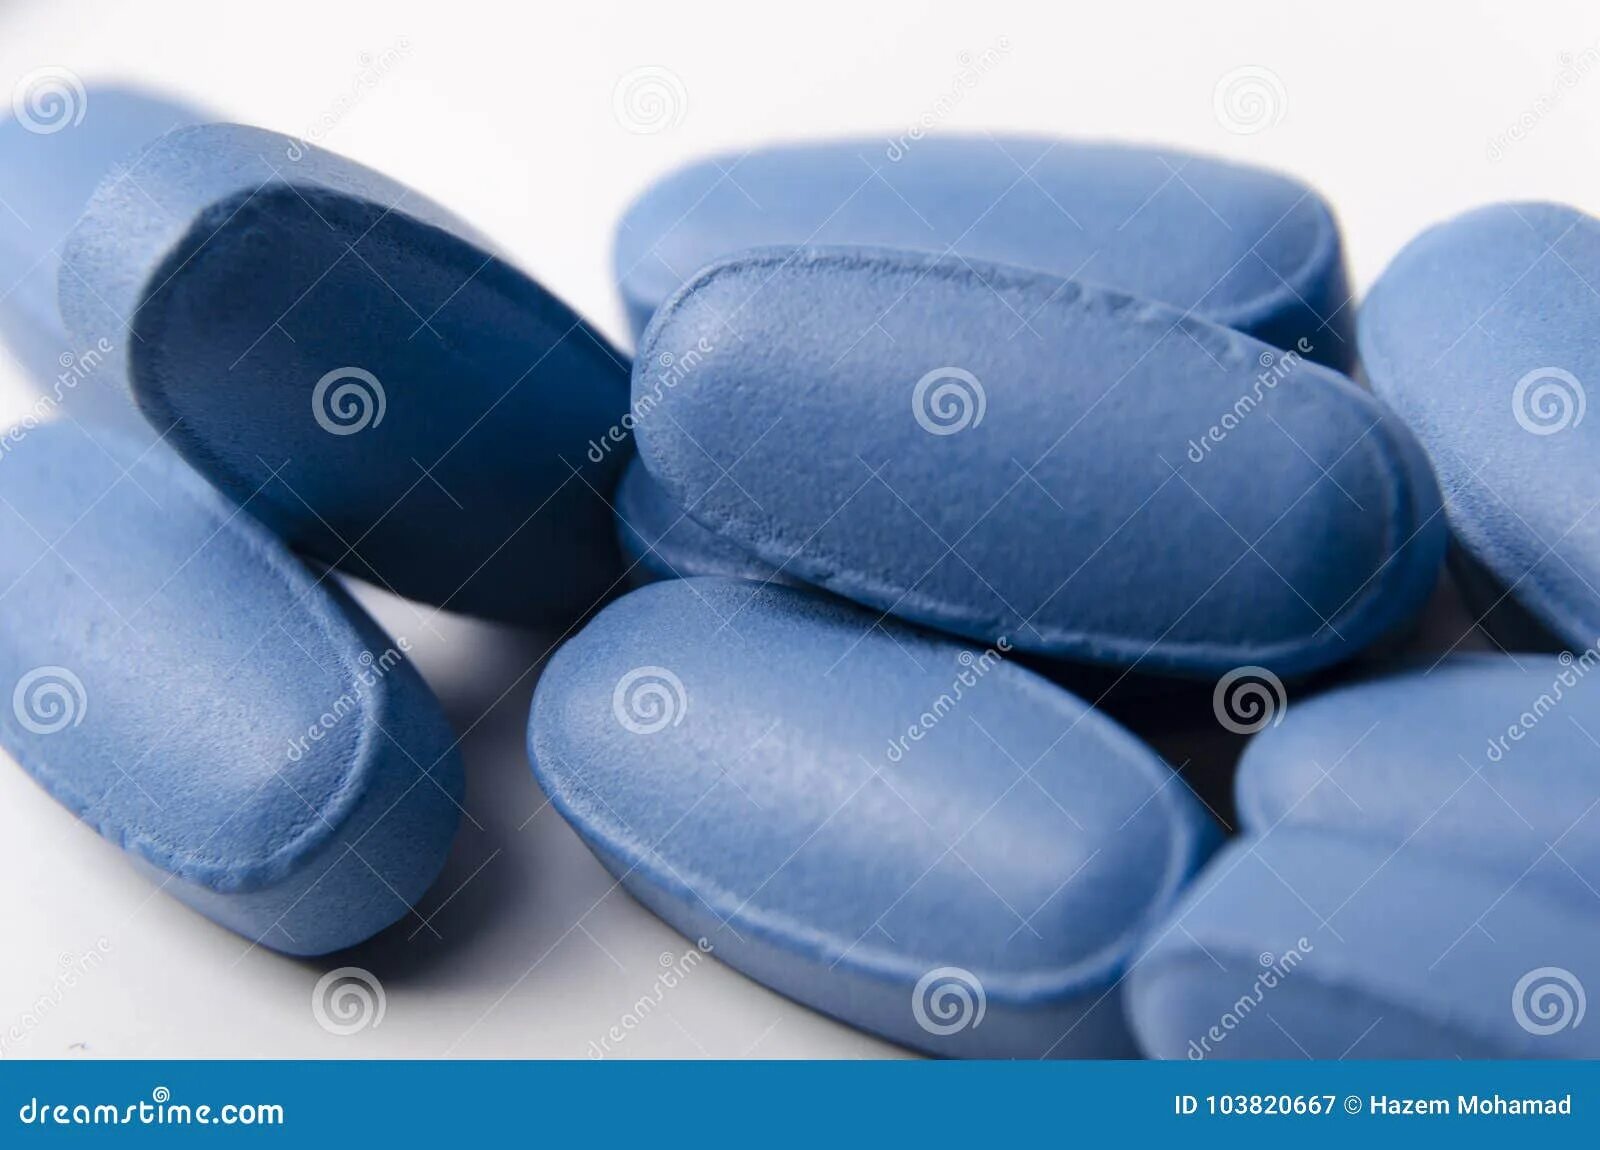 Синие таблетки обезболивающие. Синяя таблетка. Большие синие таблетки. Голубые таблетки для кайфа. Синие таблетки на белом фоне.